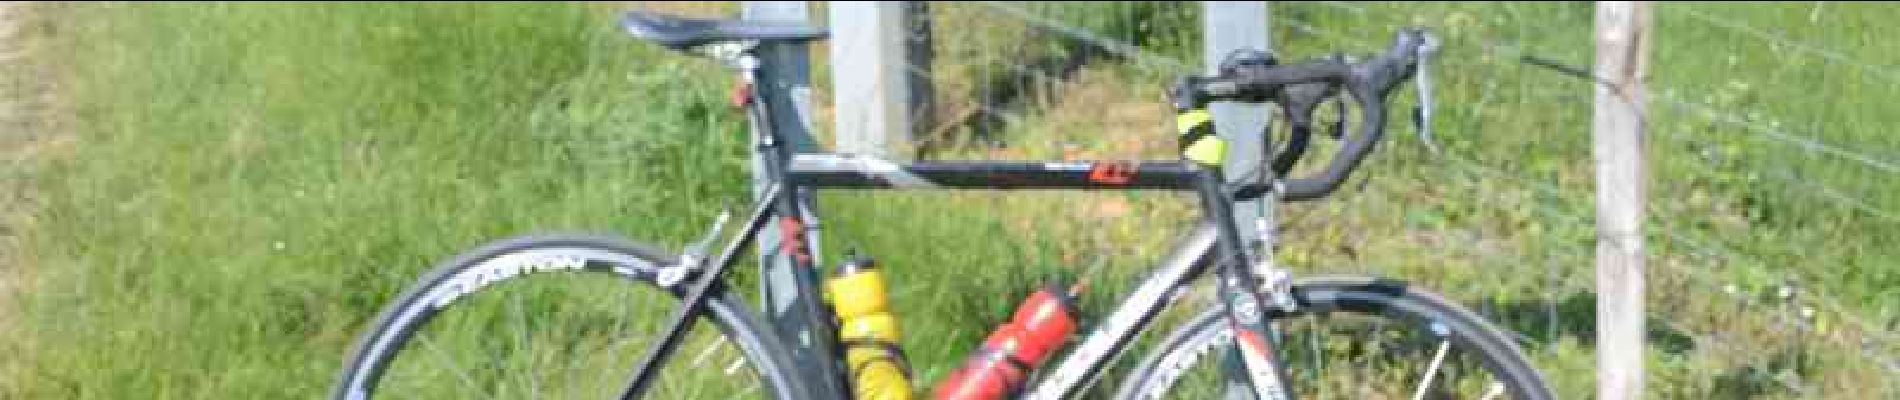 Tour Fahrrad Foix - Col de Calzan et rencontre équestre - Photo